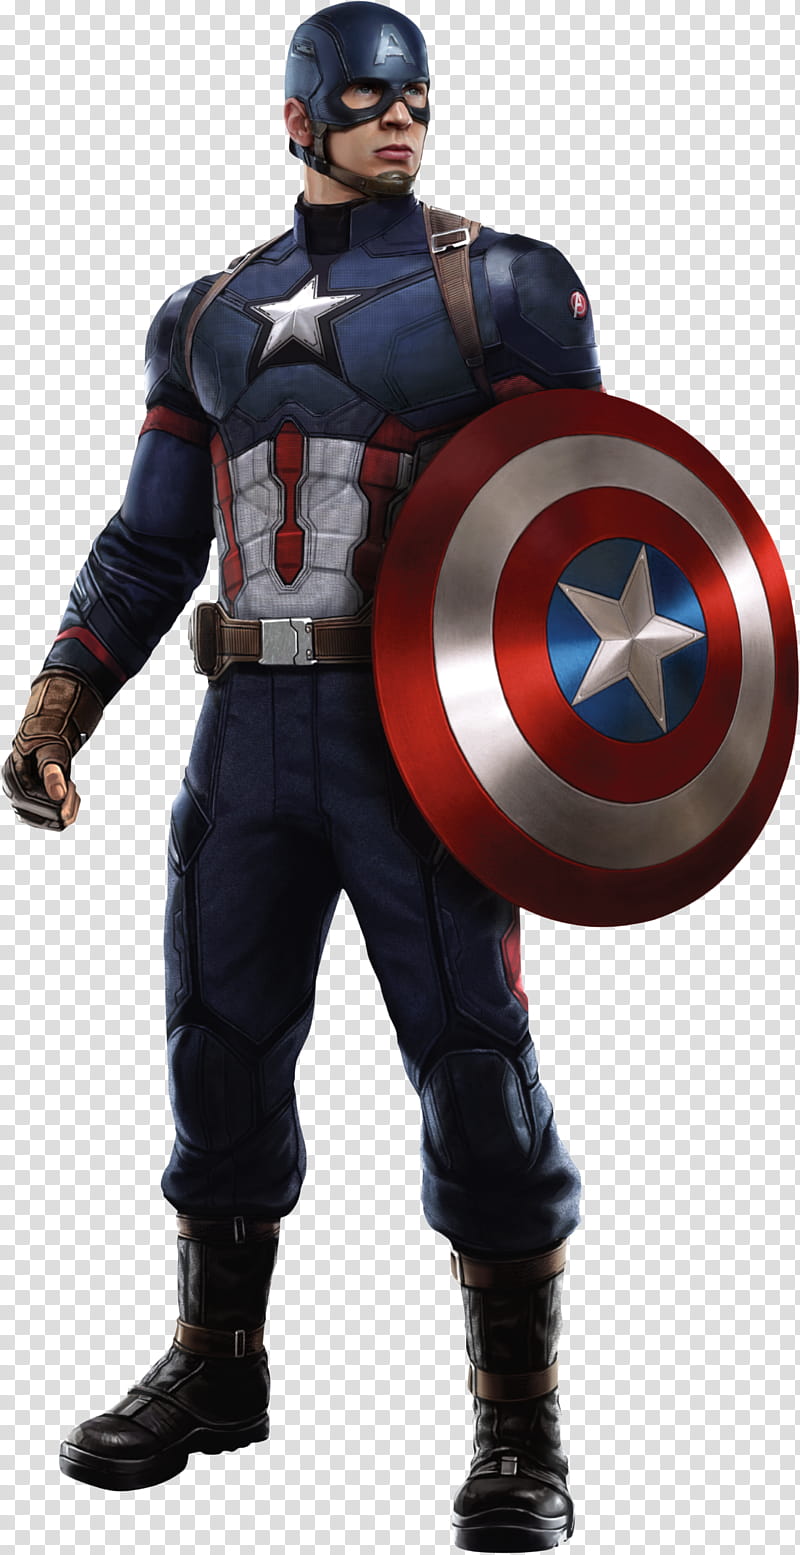 Captain America Civil War Cap  transparent background PNG clipart